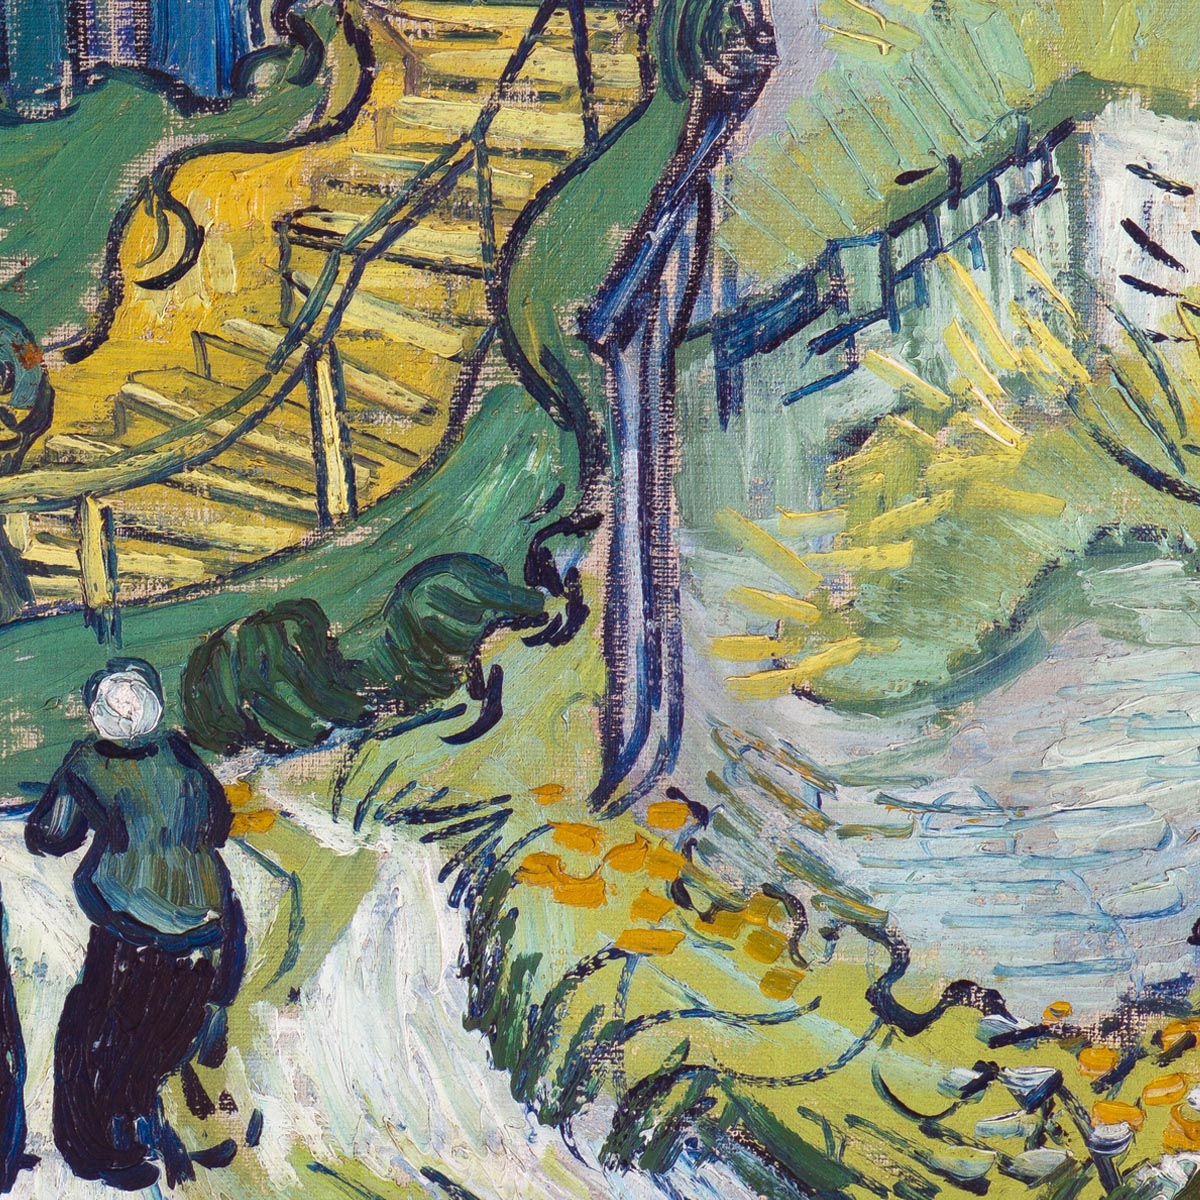 Stairway at Auvers Art Print by Van Gogh